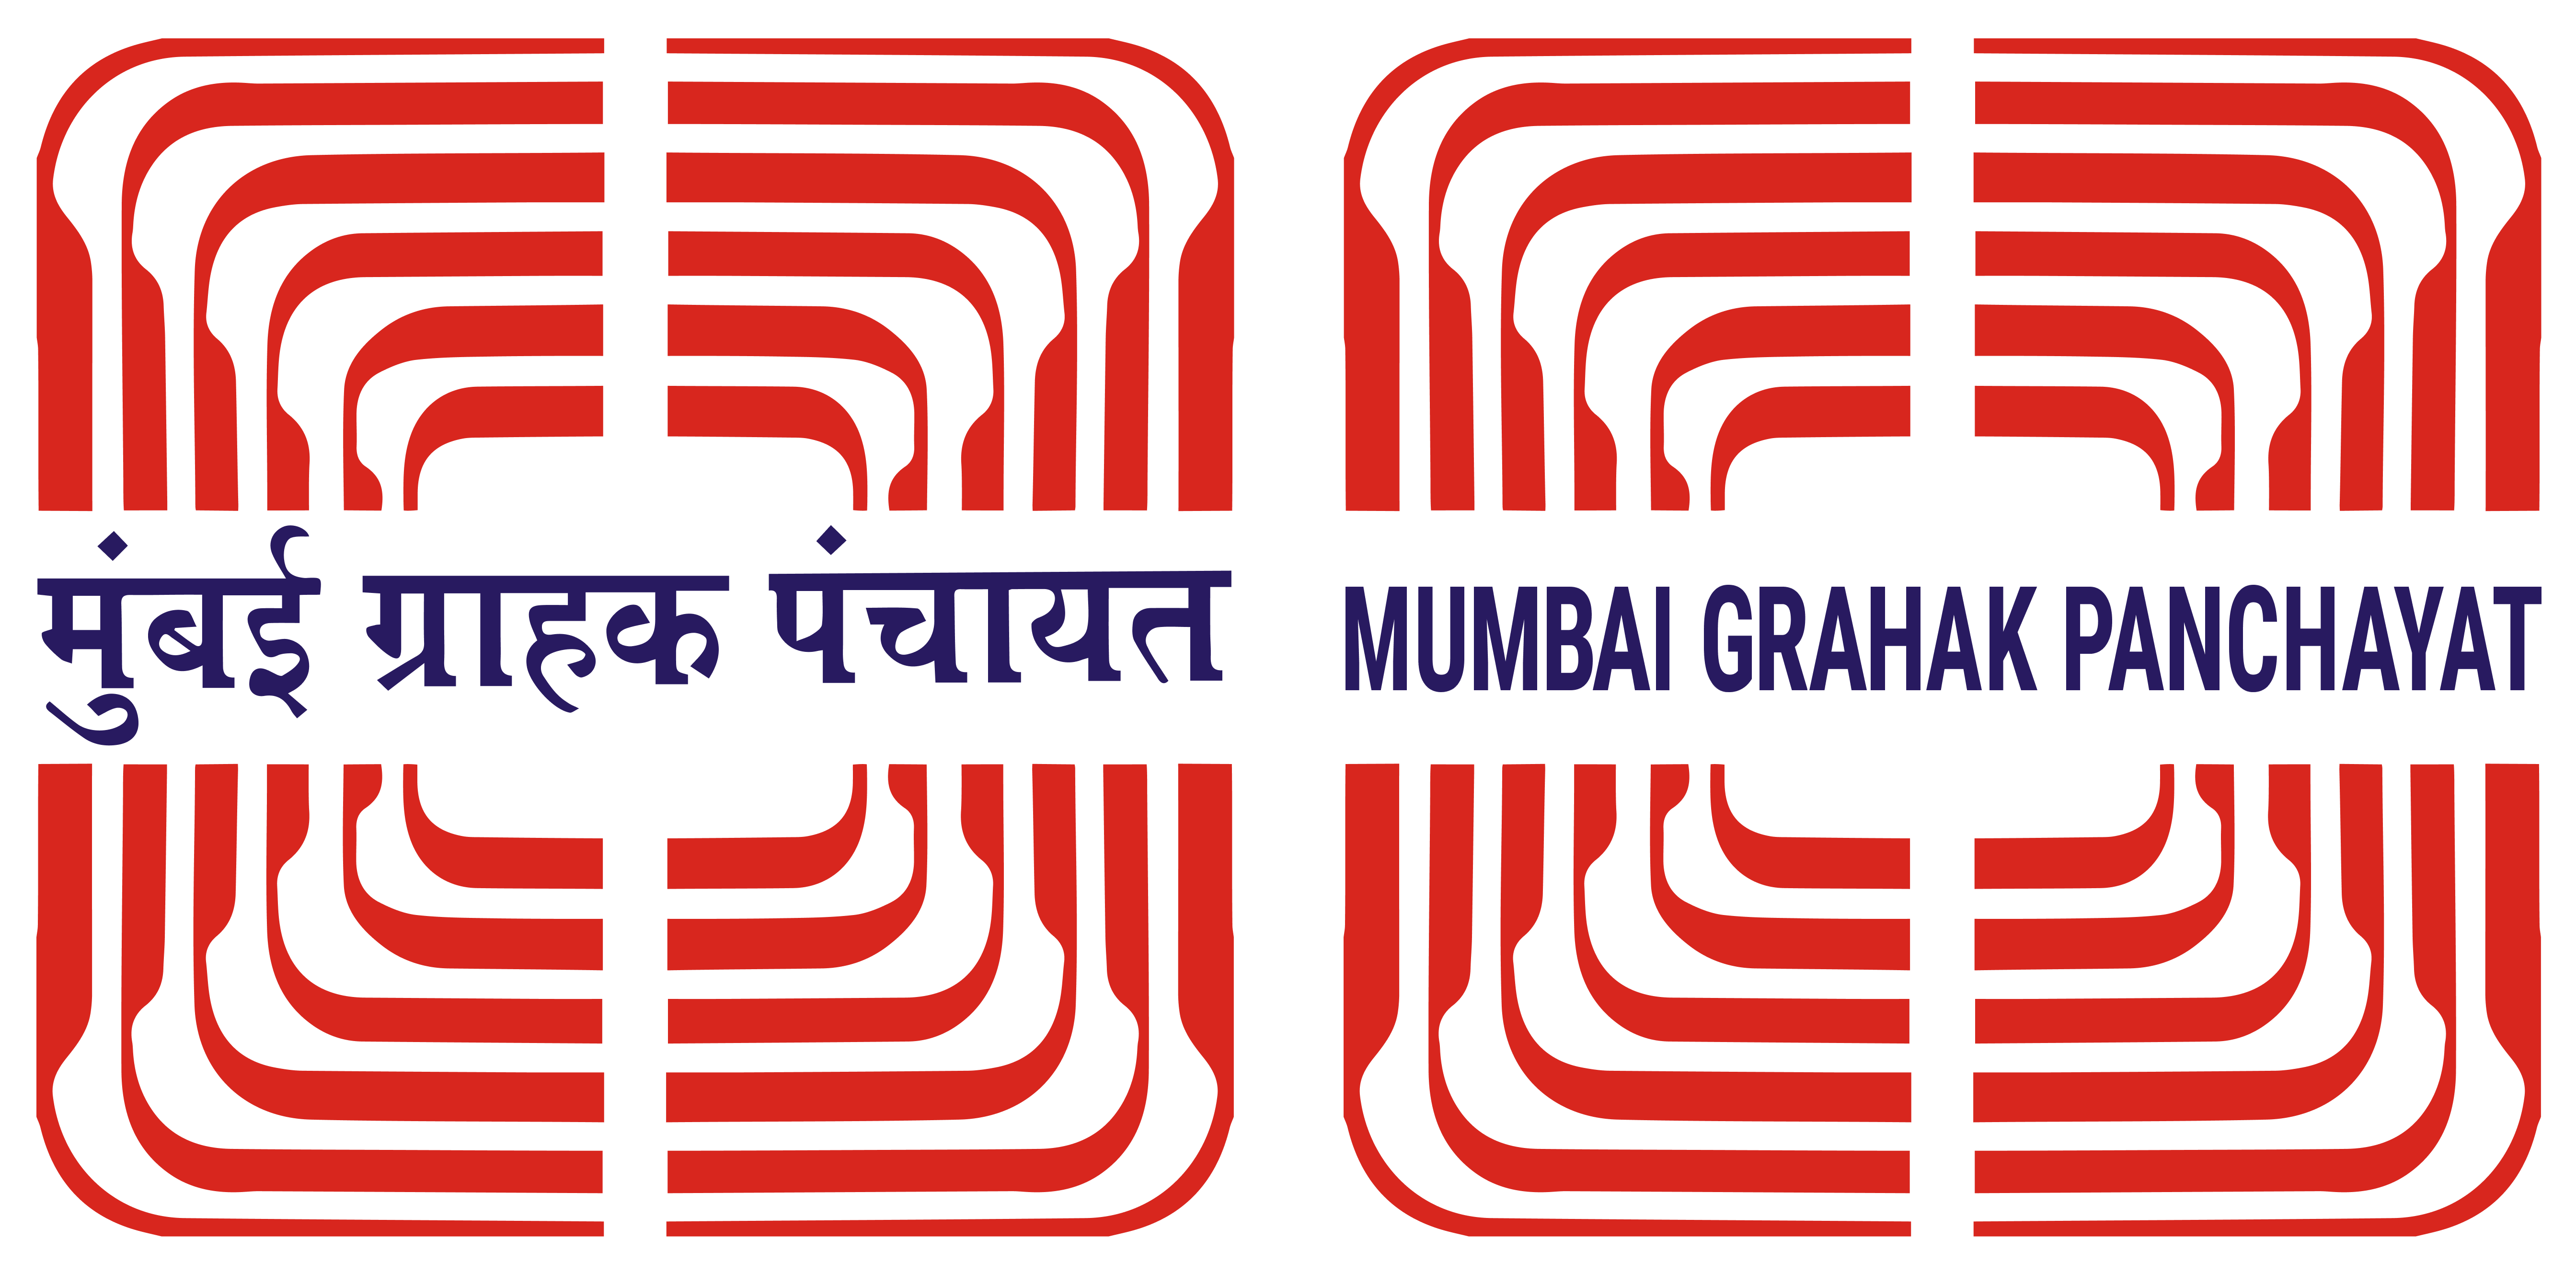 Mumbai Grahak Panchayat